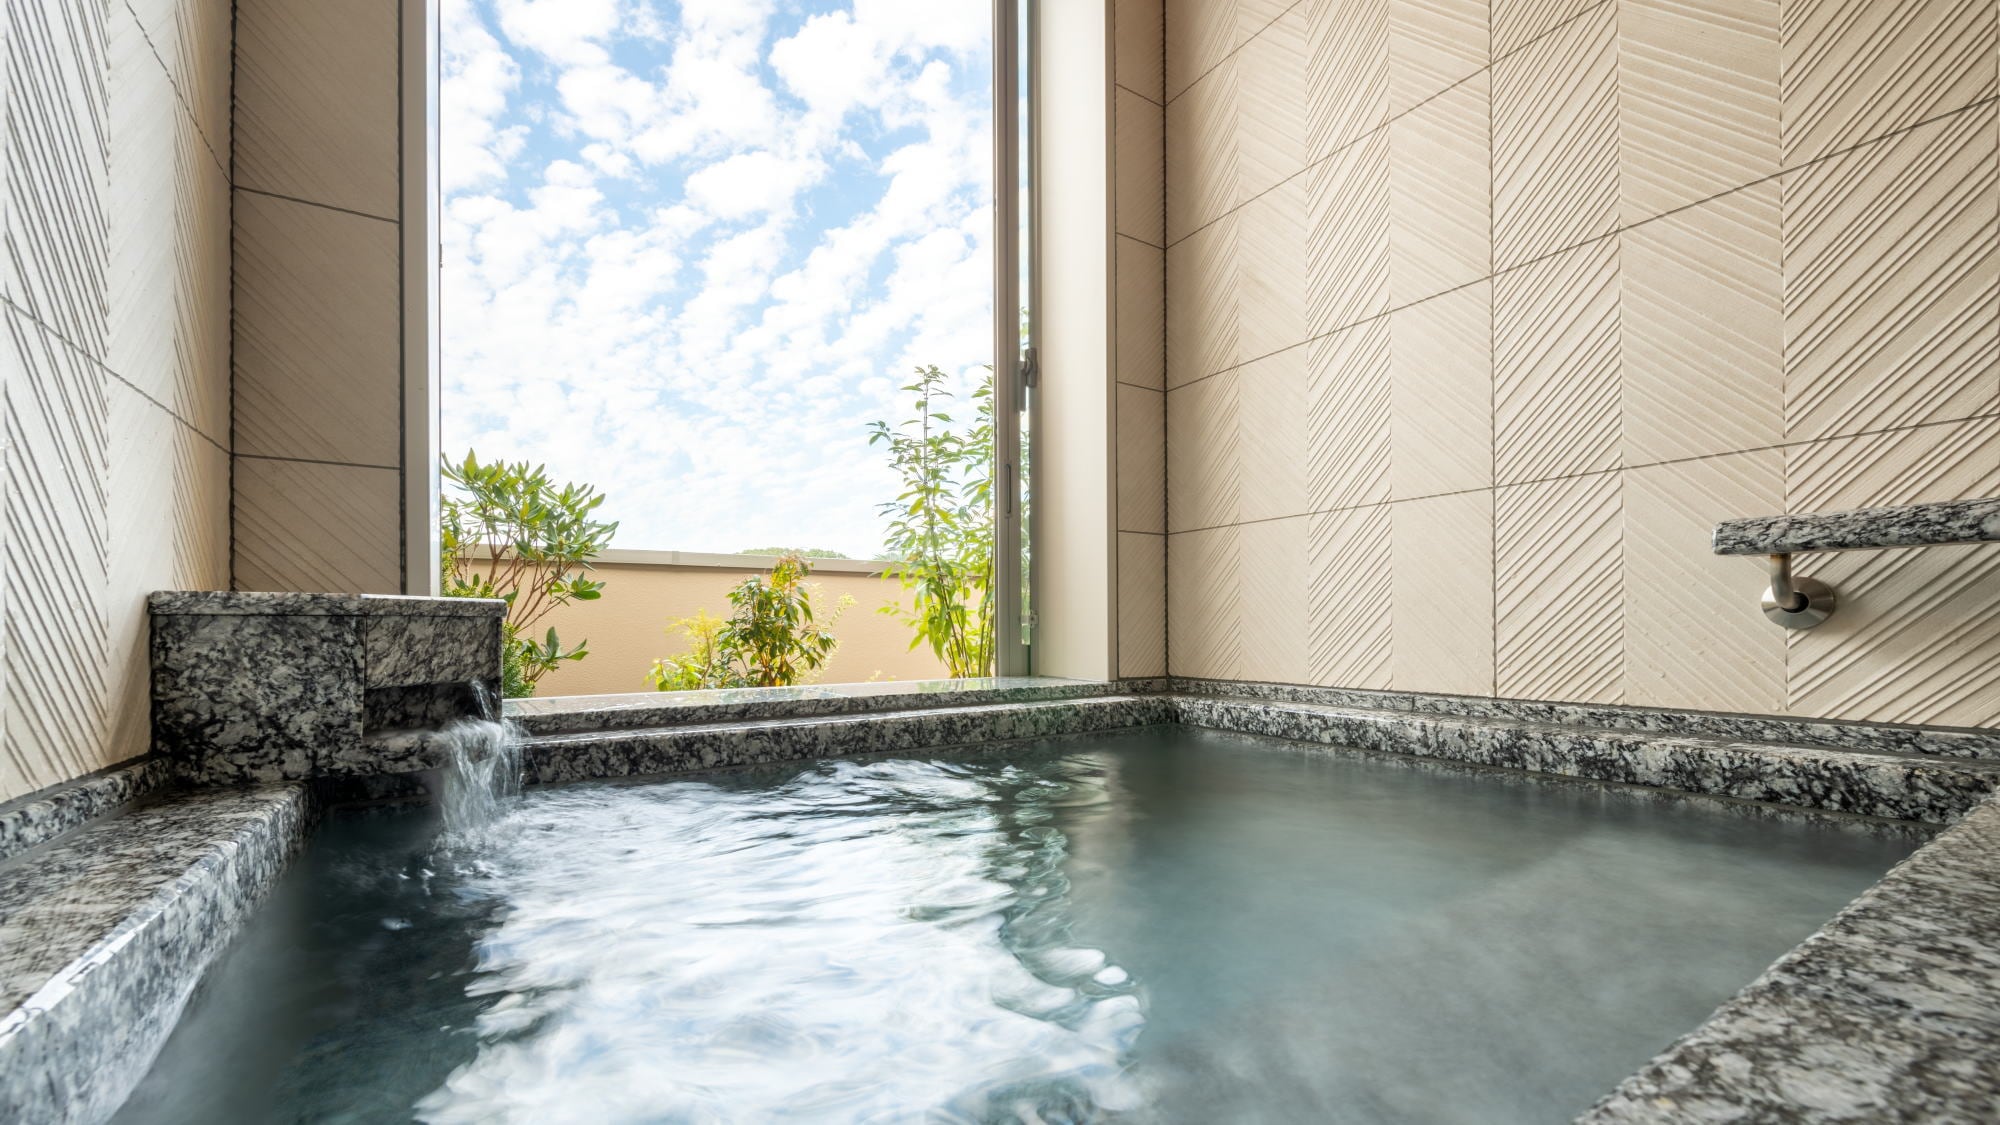 帶半露天浴池的客房“Hanayu” 半露天浴池是專供客人使用的空間......您可以欣賞美景。